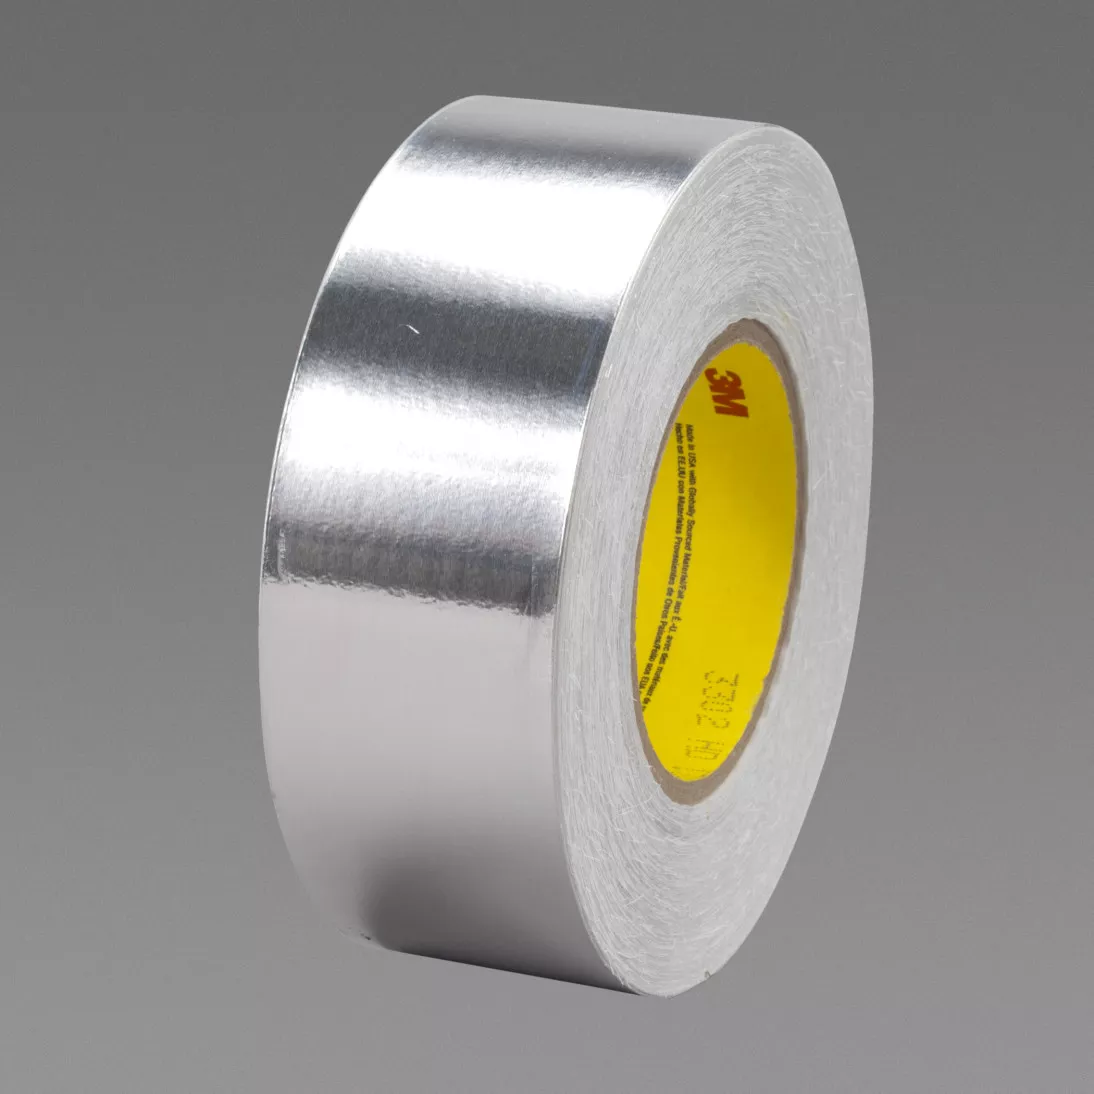 3M™ Conductive Aluminum Foil Tape 3302, Silver, 4 in x 36 yd, 3.5 mil, 2
rolls per case